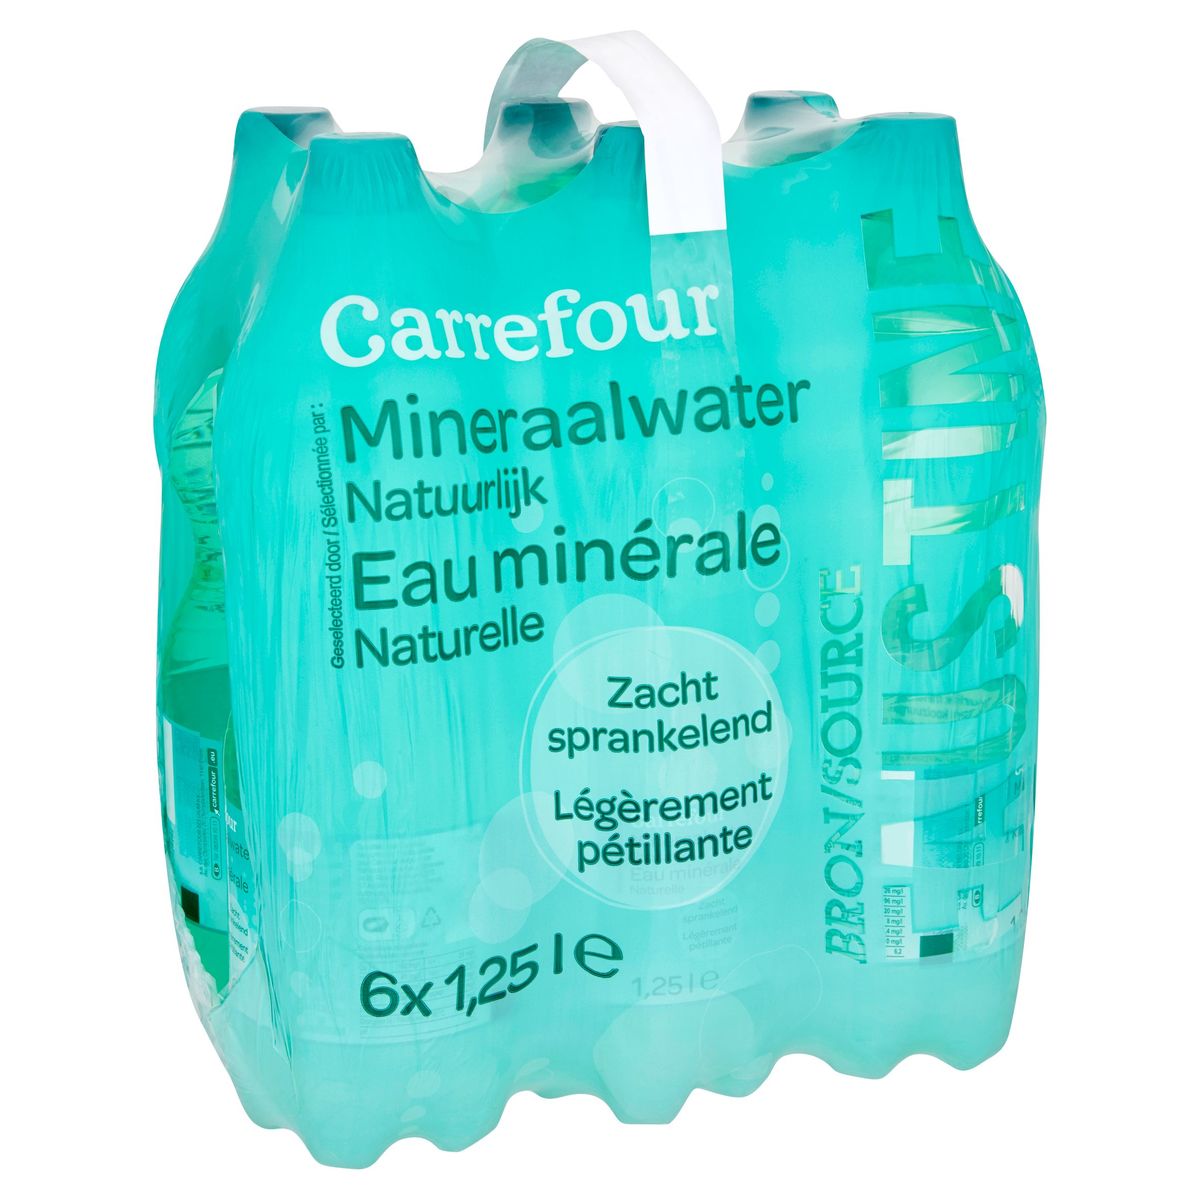 Carrefour Mineraalwater Natuurlijk Zacht Sprankelend 6 x 1.25 L